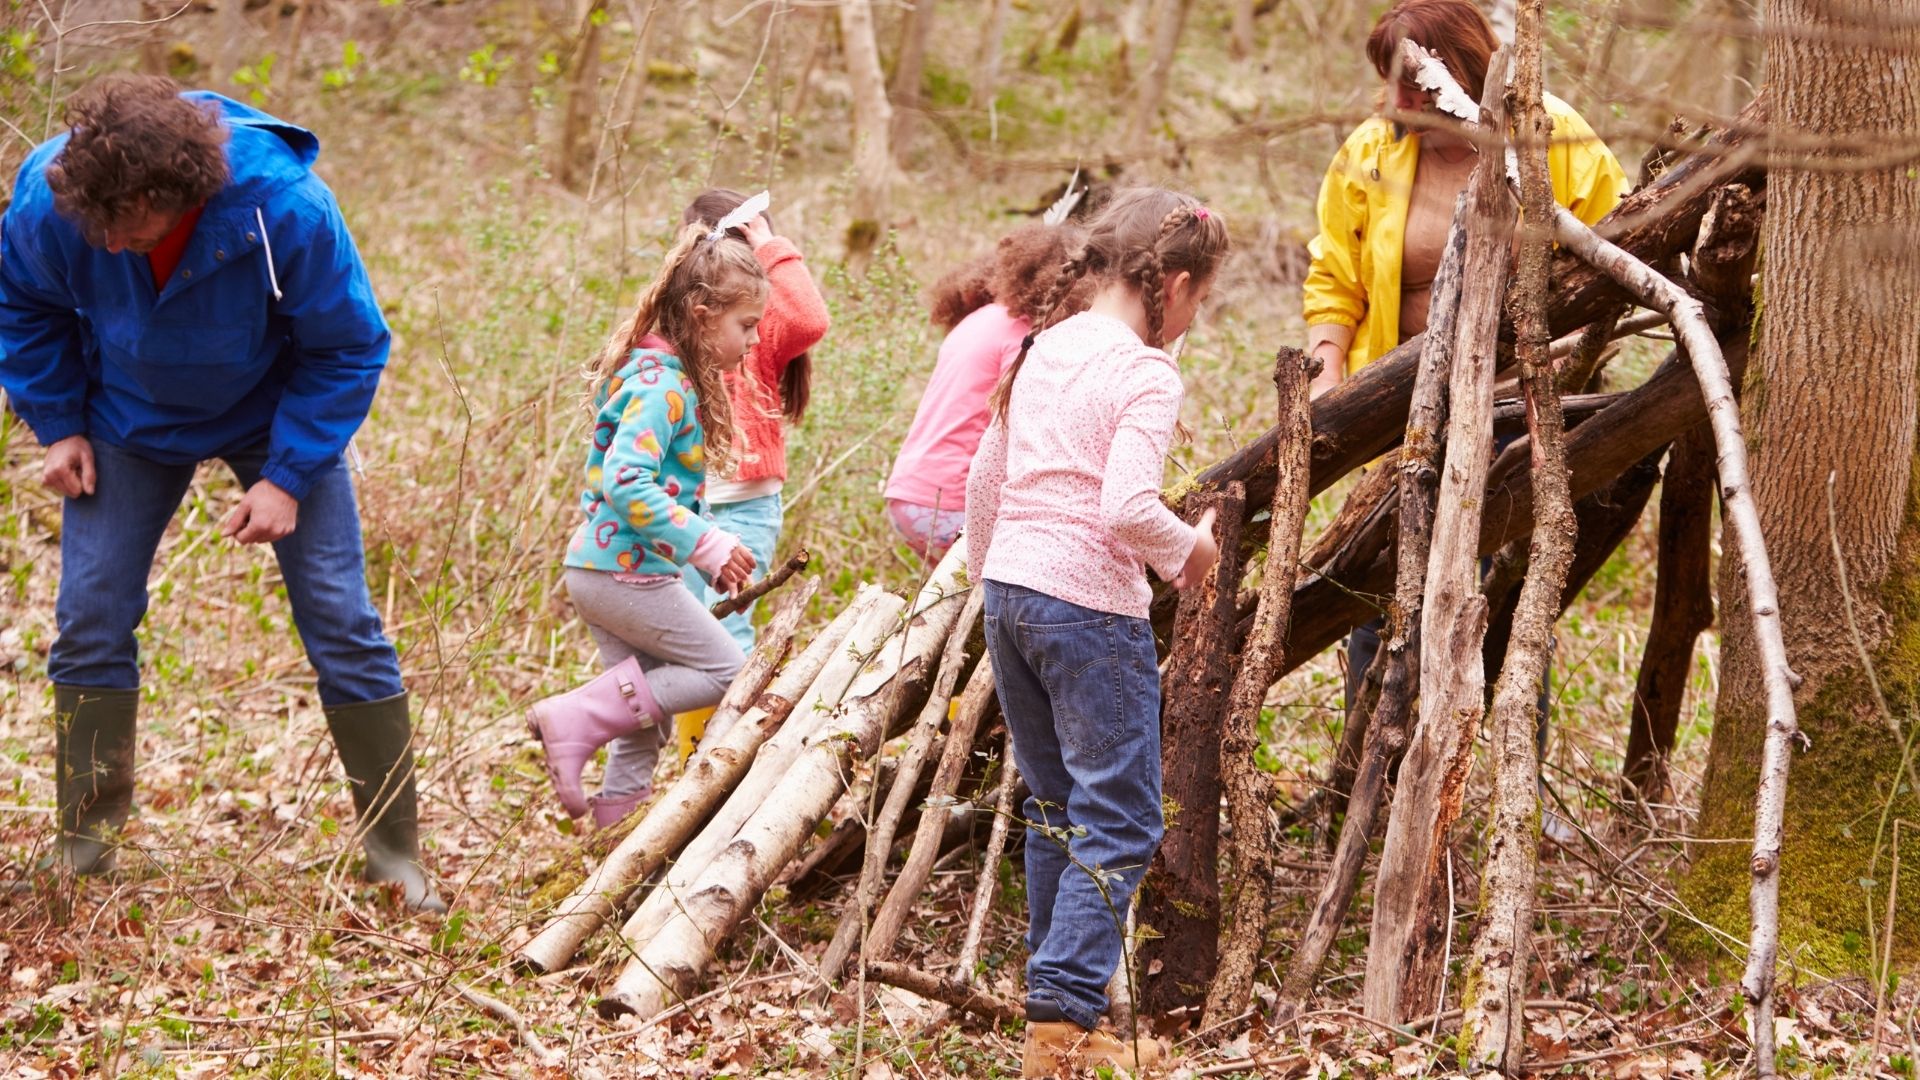 Kolonia survivalowa – pomysł na lato dla najmłodszych obozowiczów